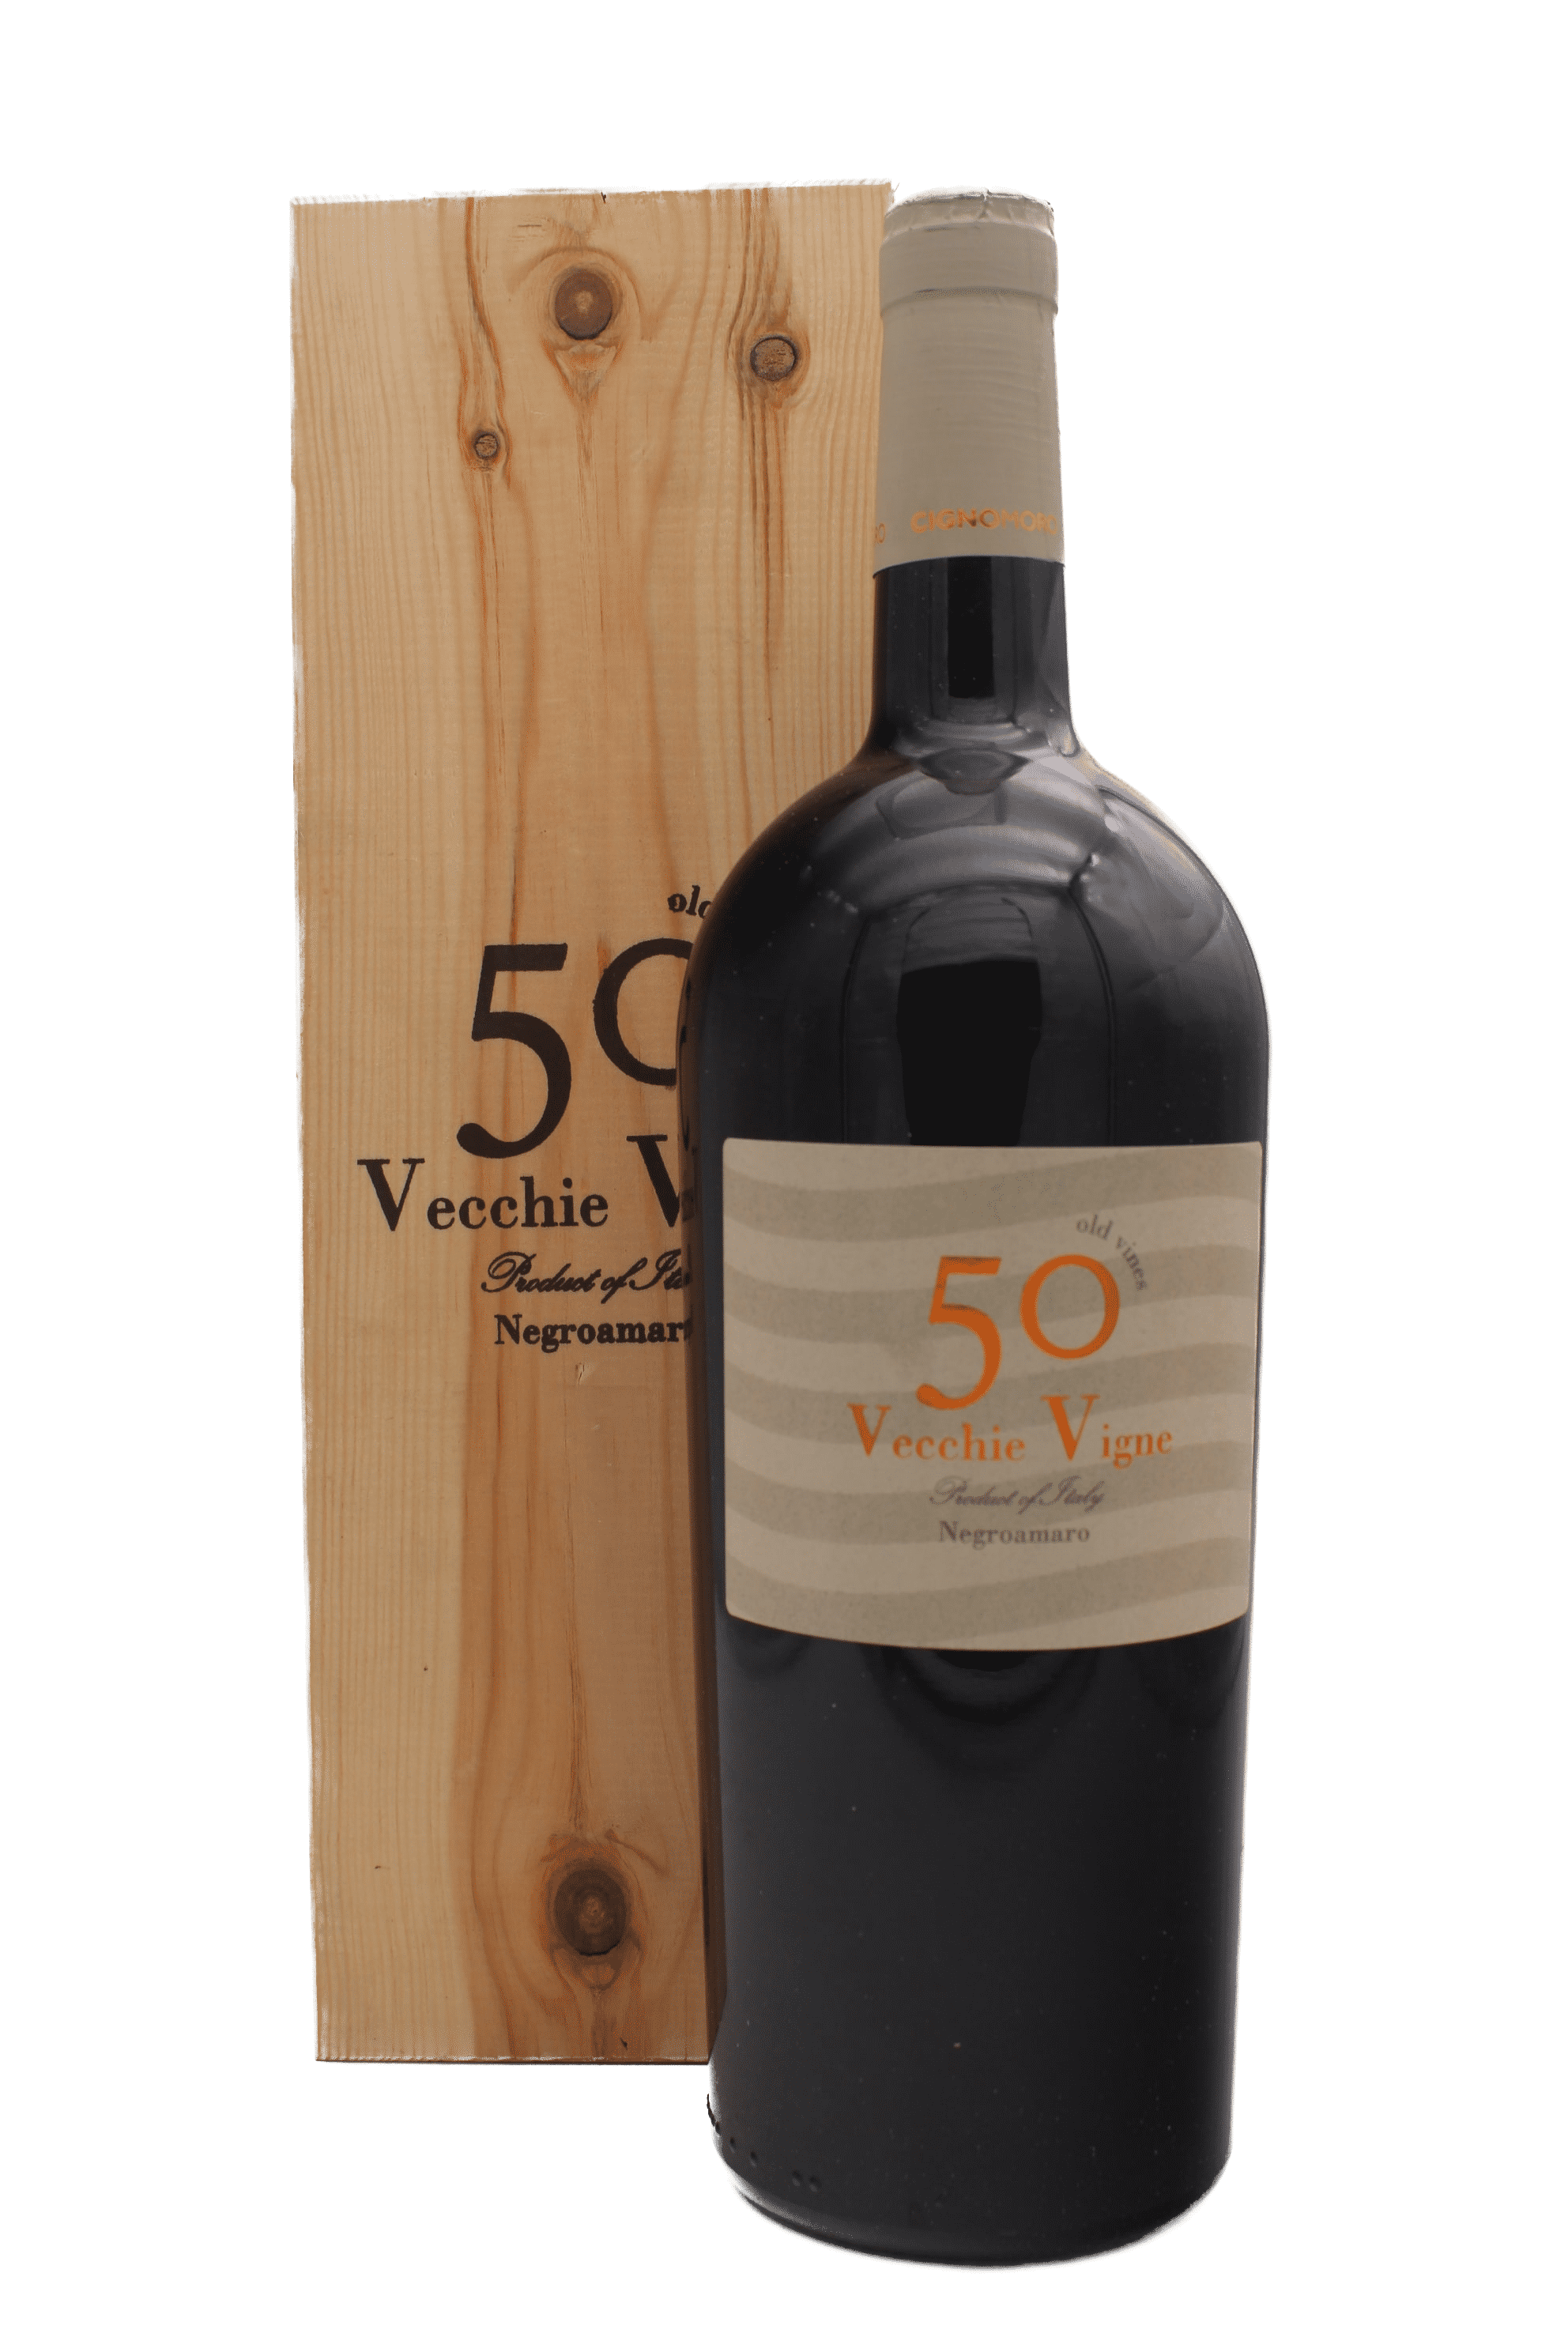 cignomoro-50-vecchie-vigne-magnum